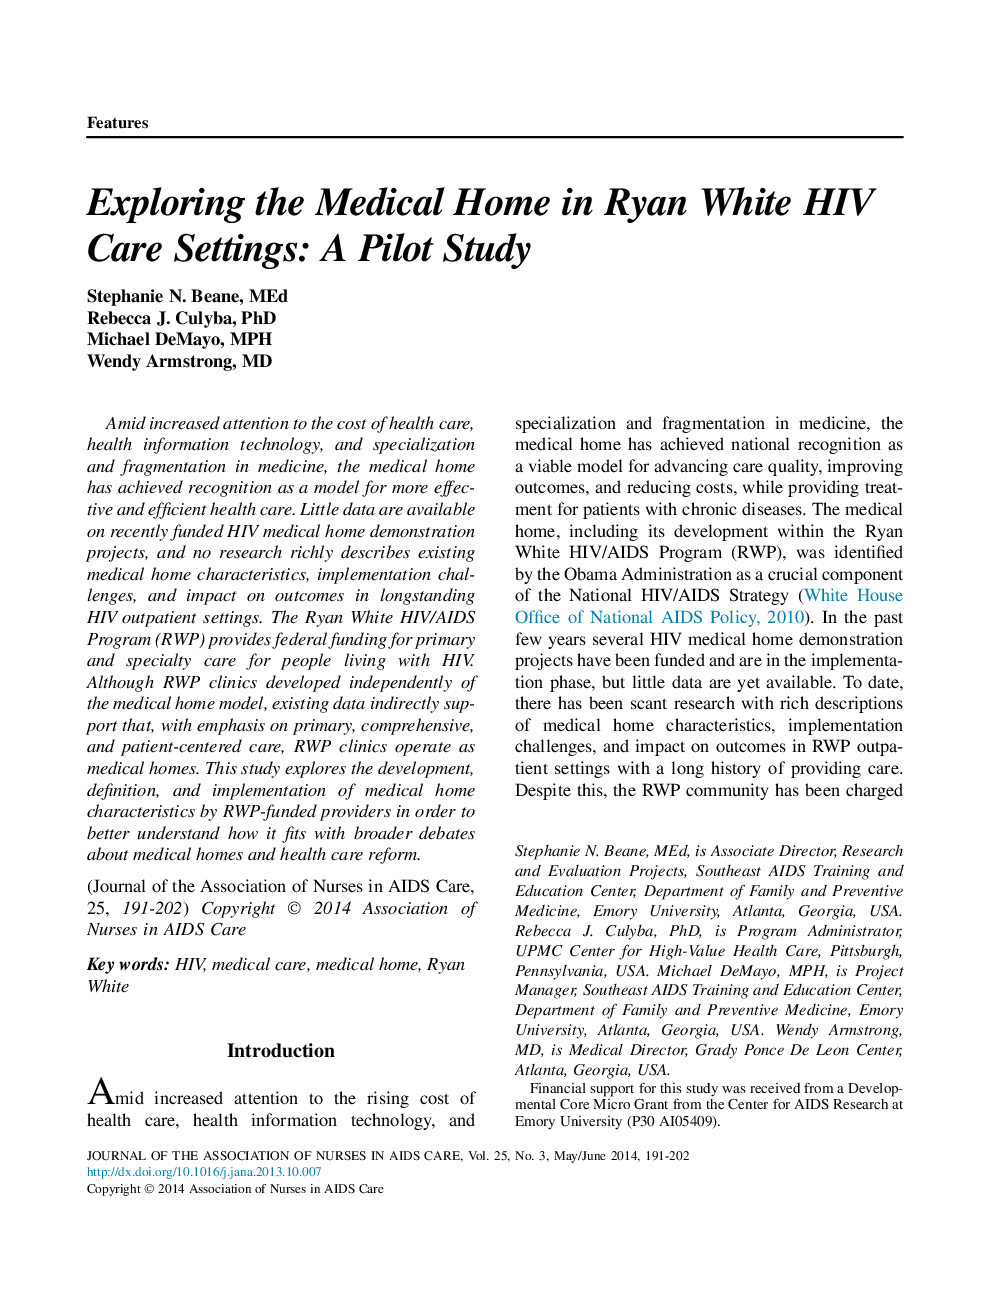 بررسی خانه های پزشکی در رایان سفید تنظیمات مراقبت از اچ آی وی: یک مطالعه خلبان 